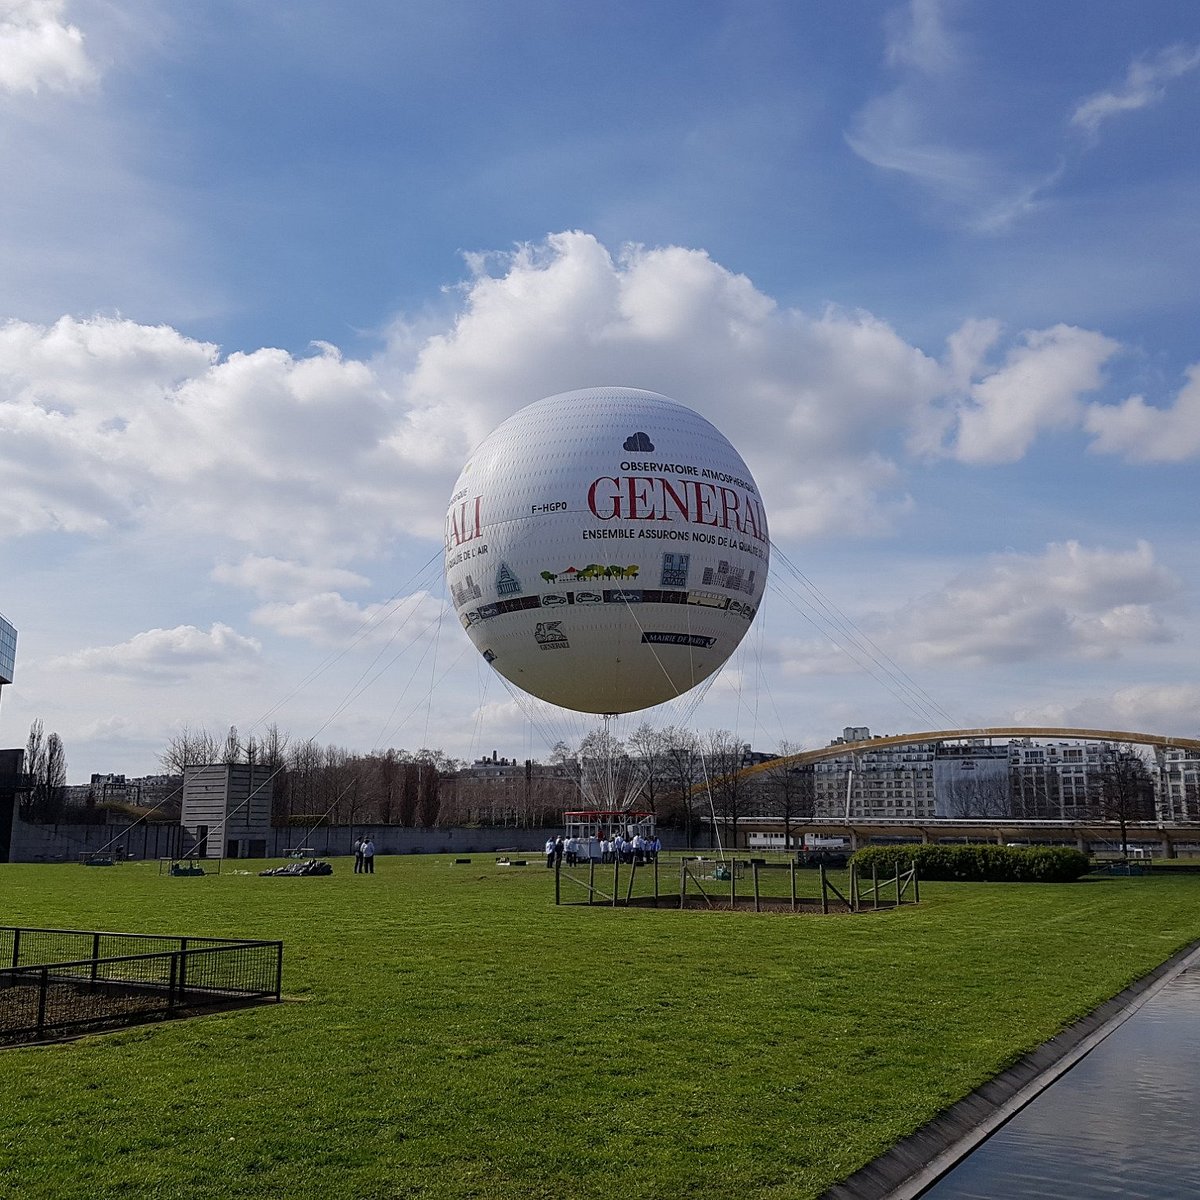 Gros Ballon 1,5m vert/rouge, Attractions & Jeux